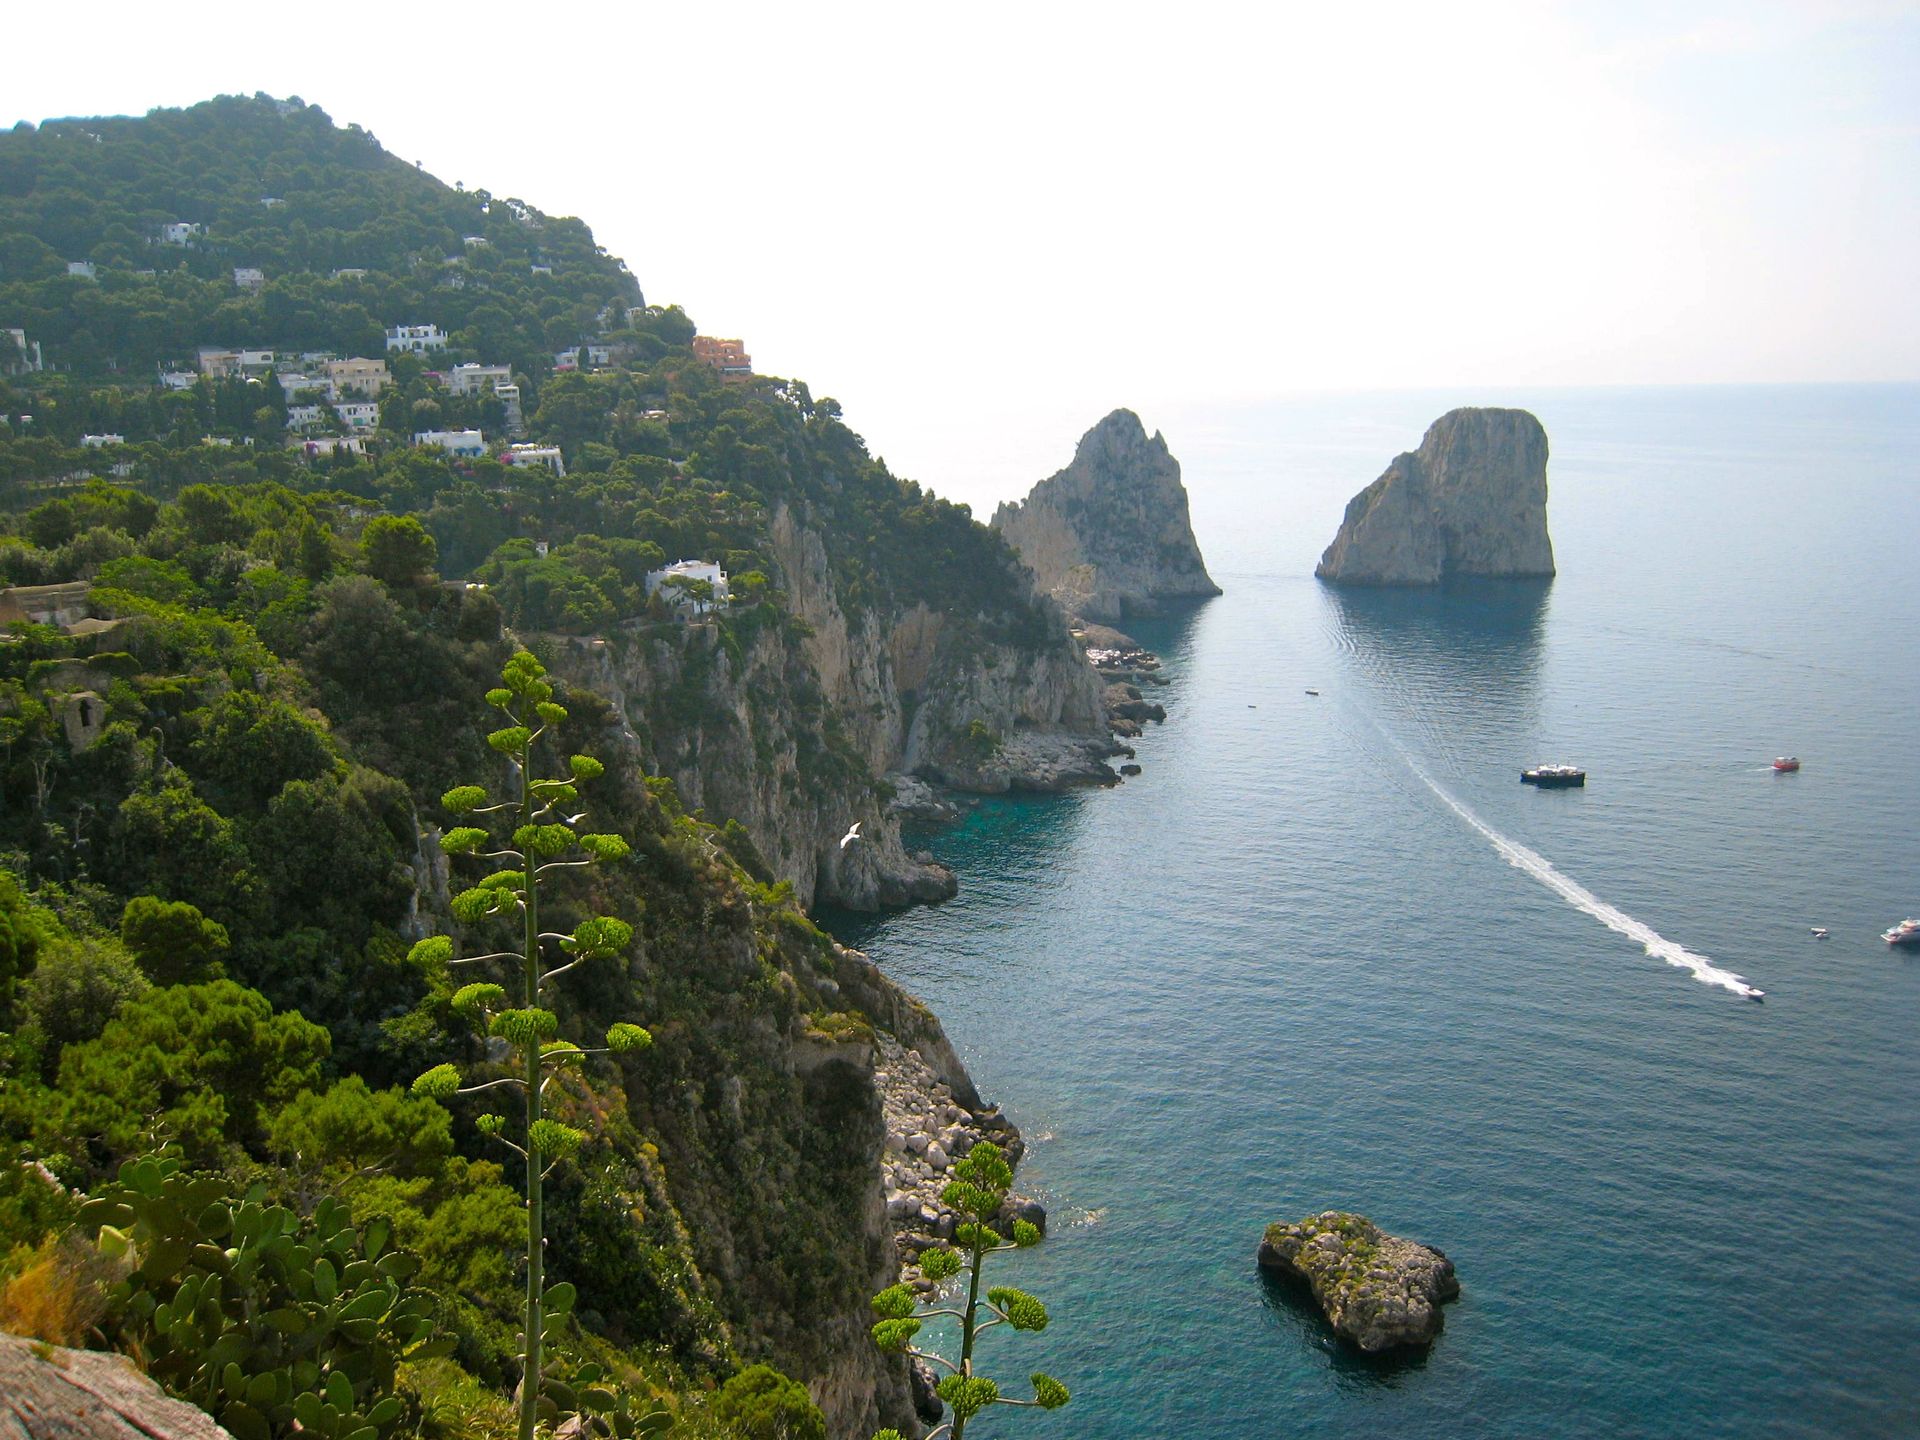 The coastline in Capri, Italy.